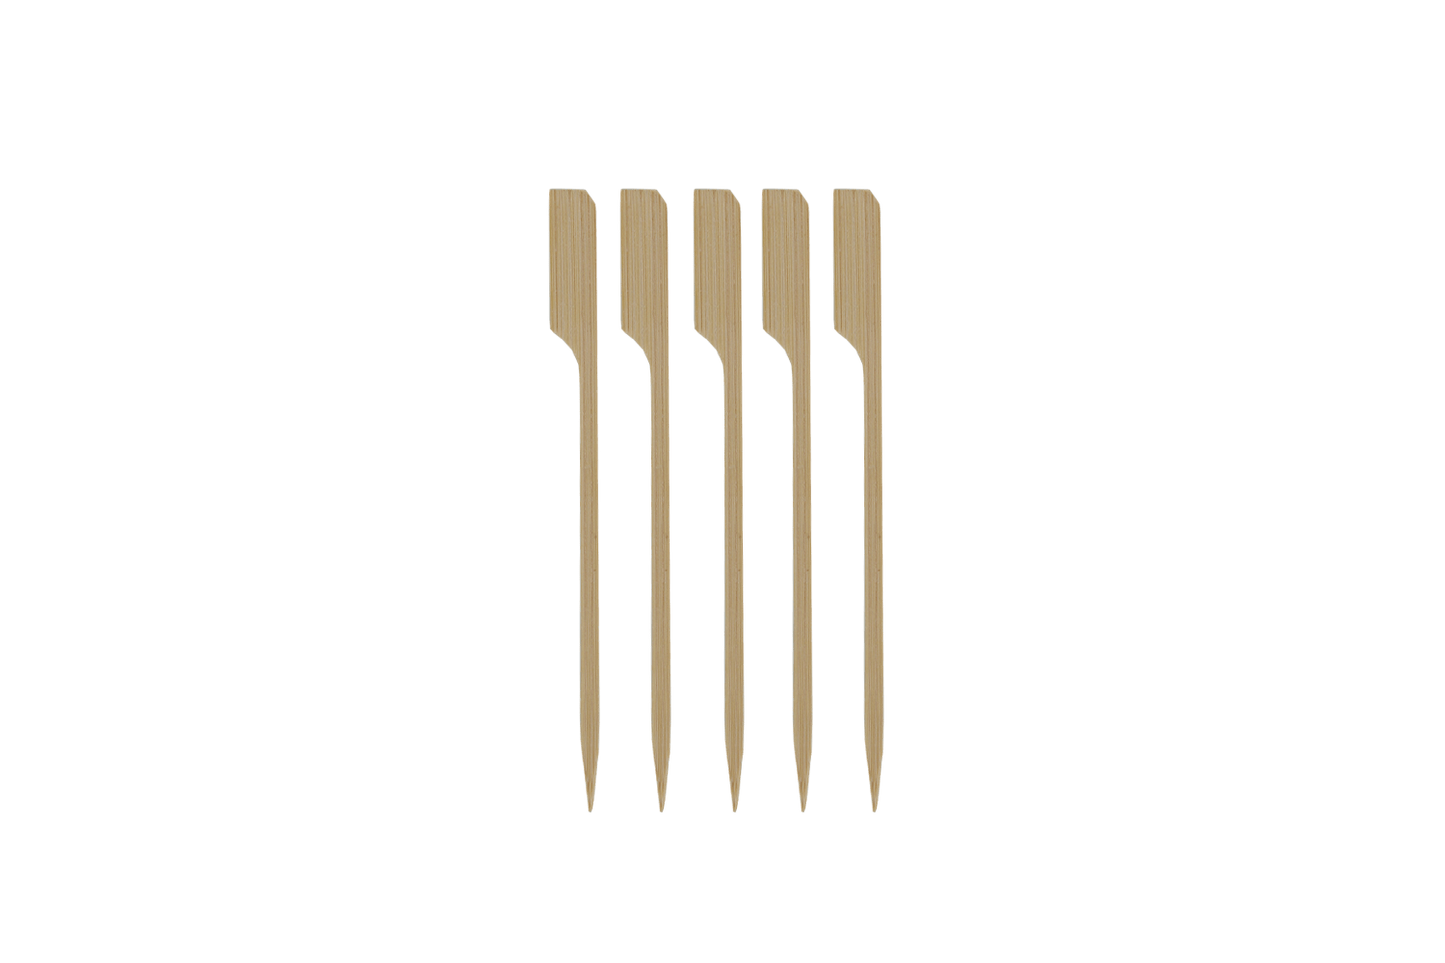 BIO Bamboo pin skewer 12cm